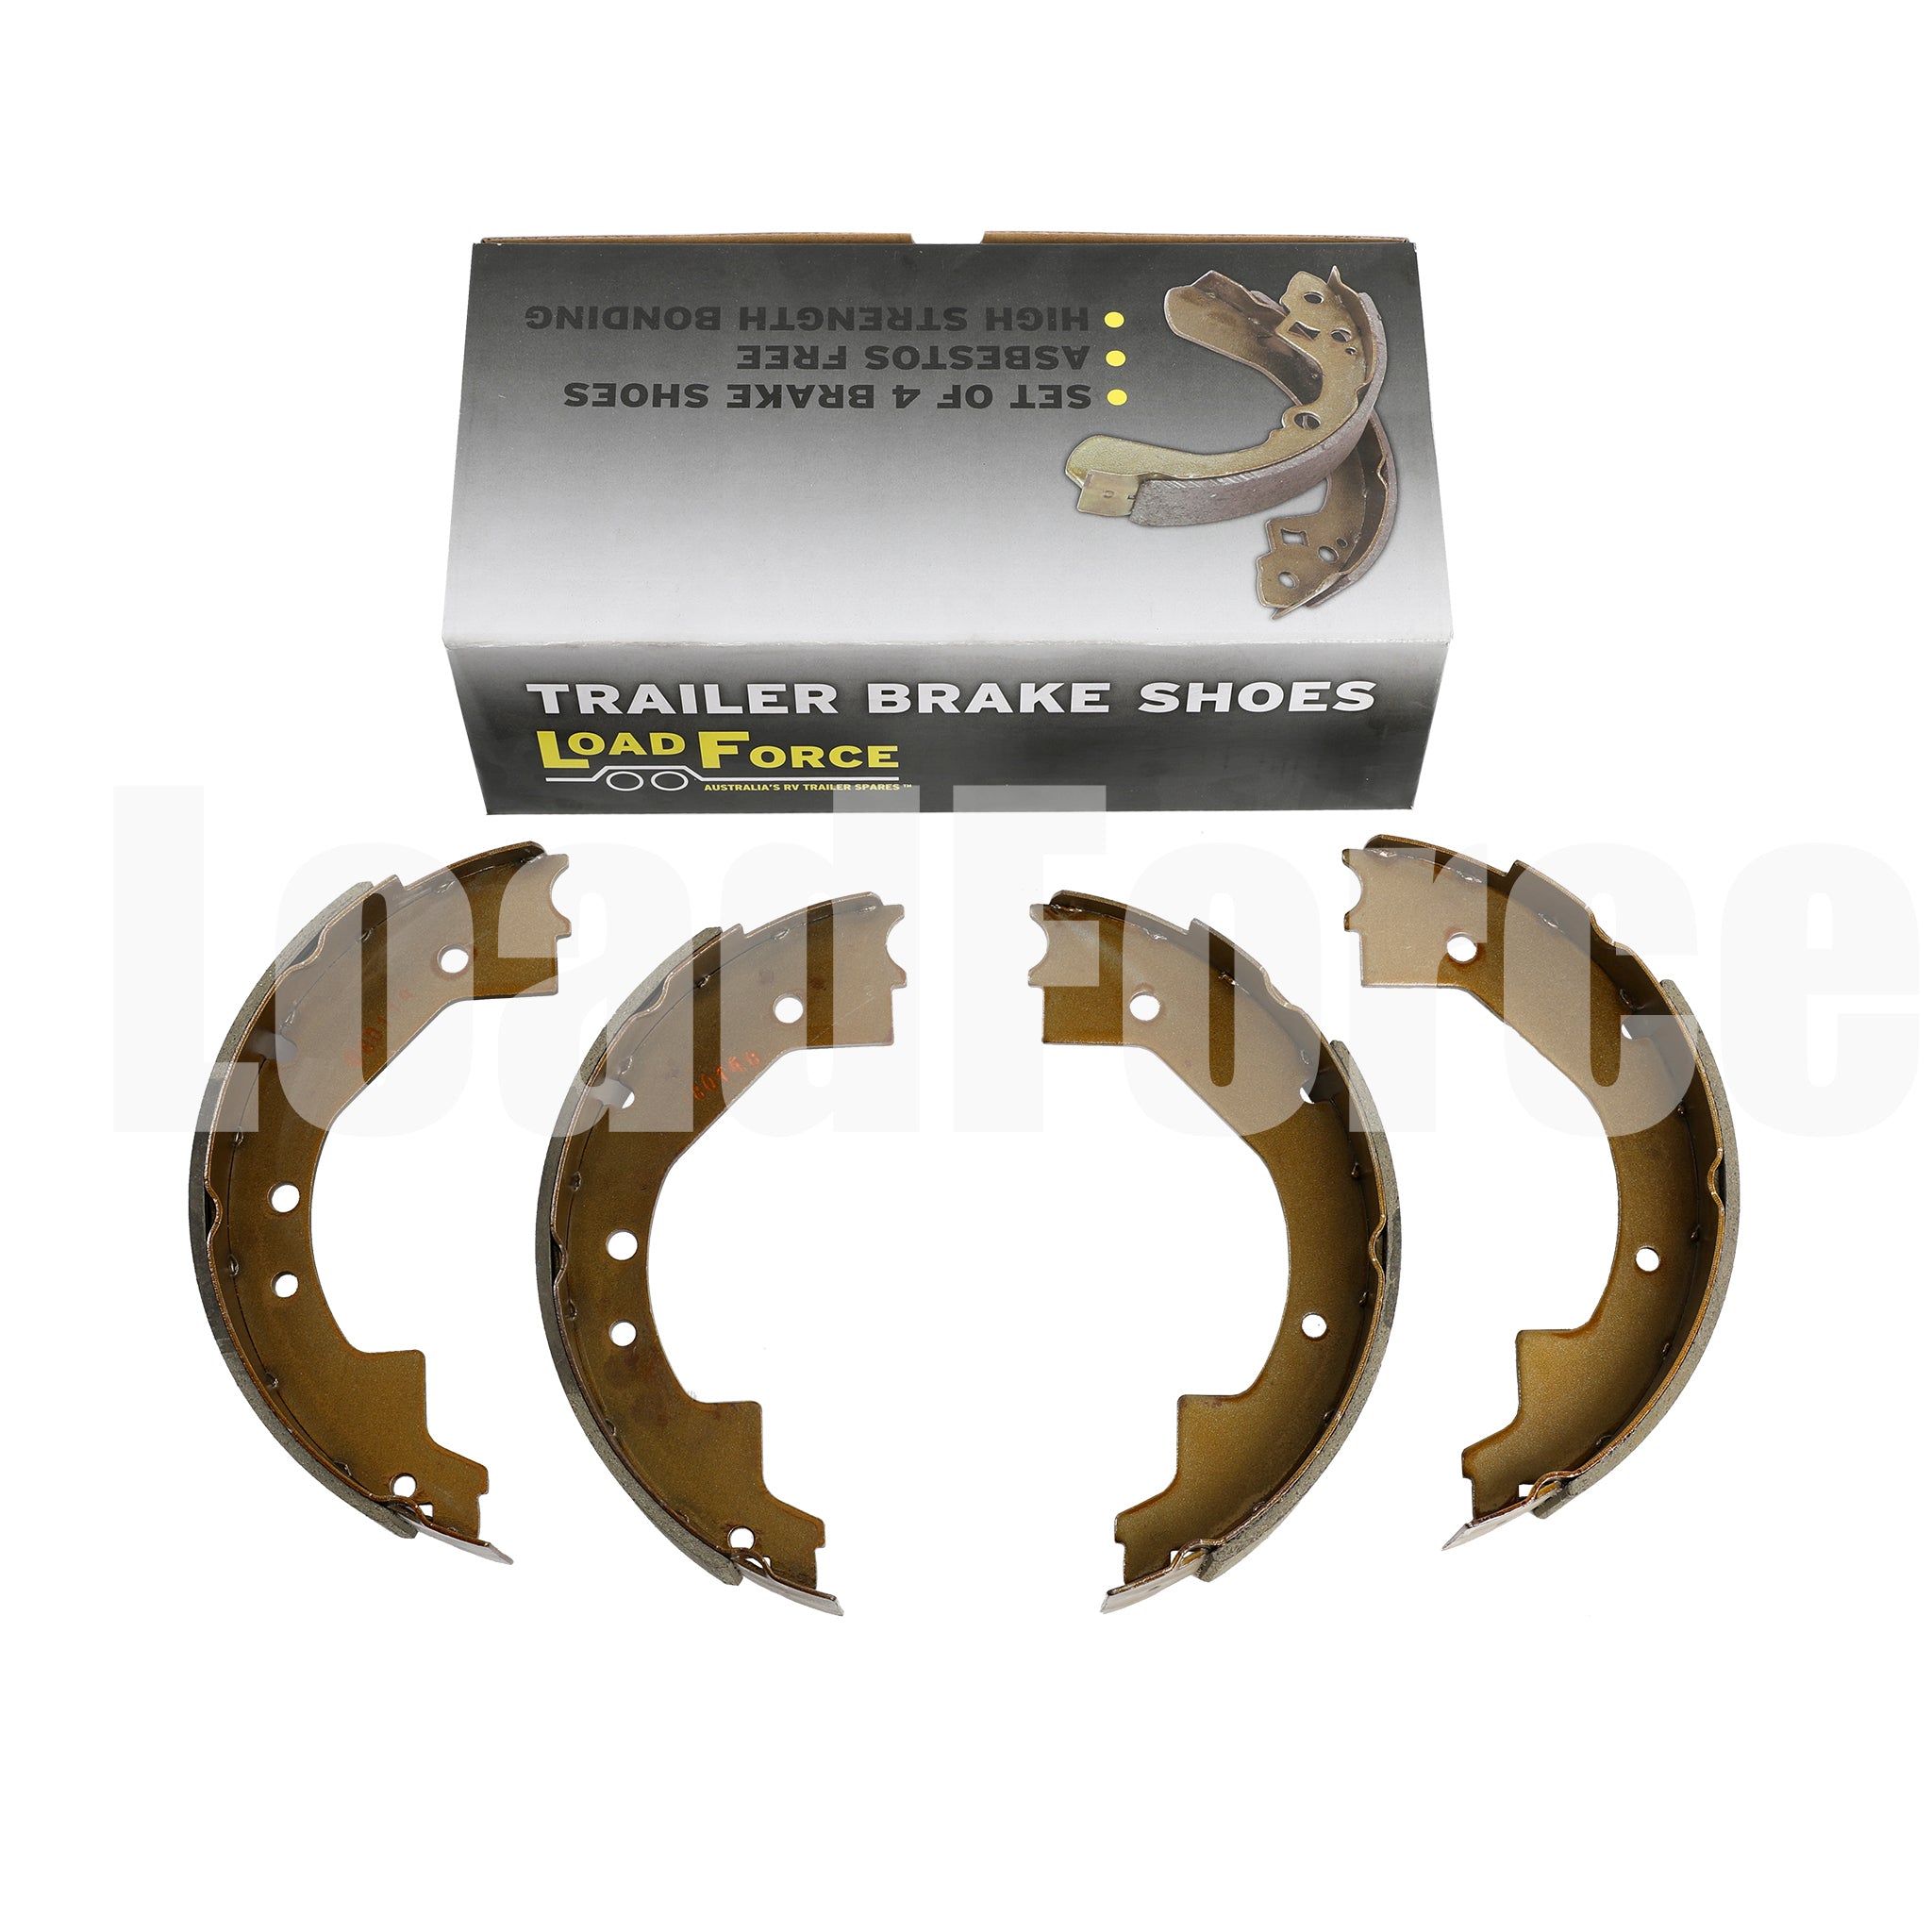 Brake shoes for 10 inch Dexter self-adjusting electric brakes - set of 4